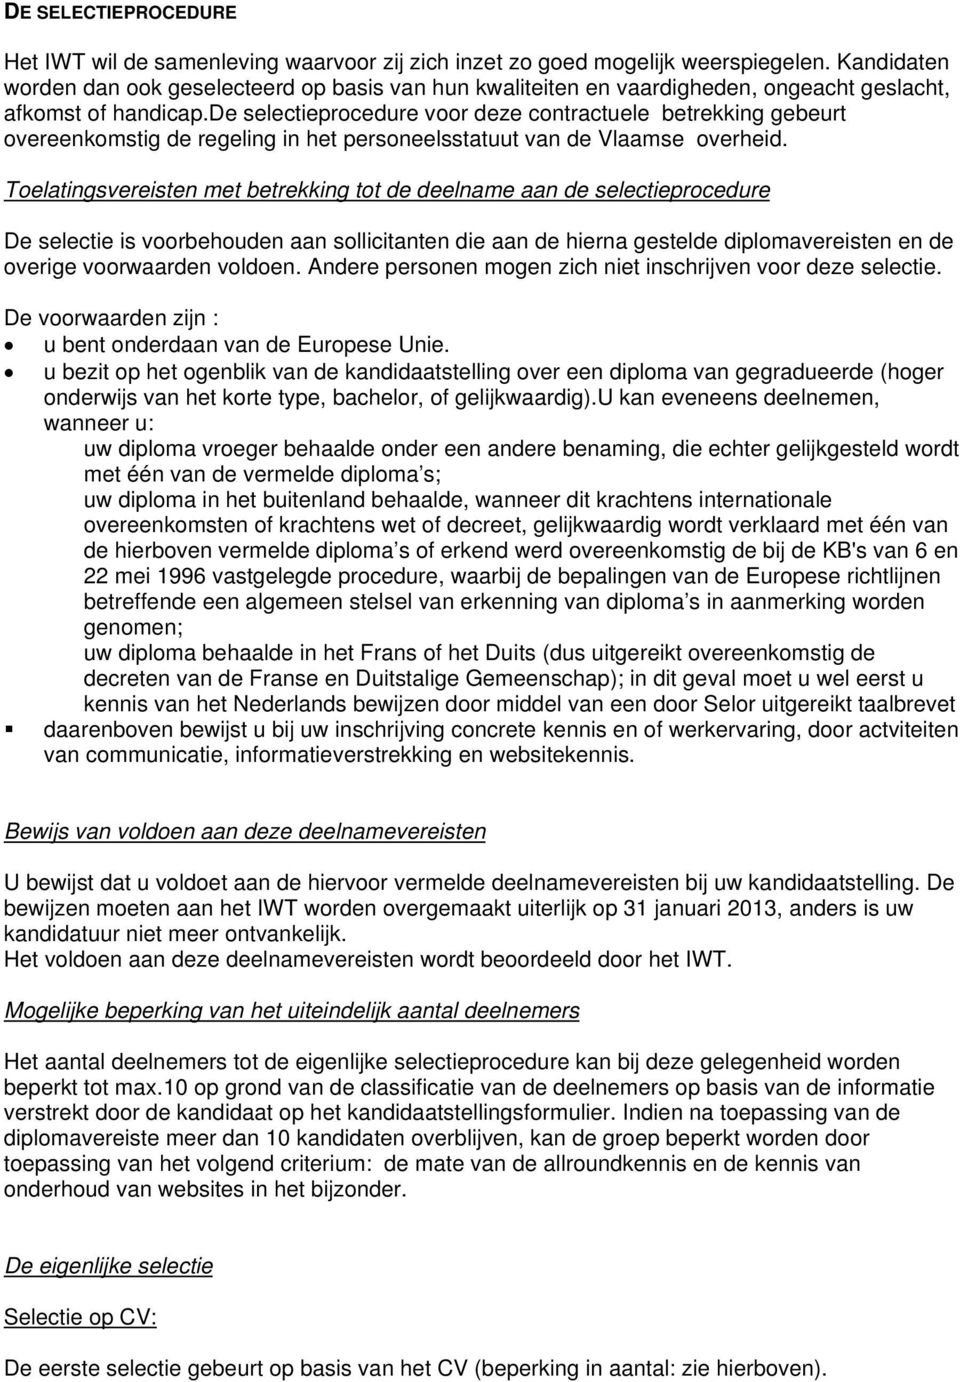 de selectieprocedure voor deze contractuele betrekking gebeurt overeenkomstig de regeling in het personeelsstatuut van de Vlaamse overheid.